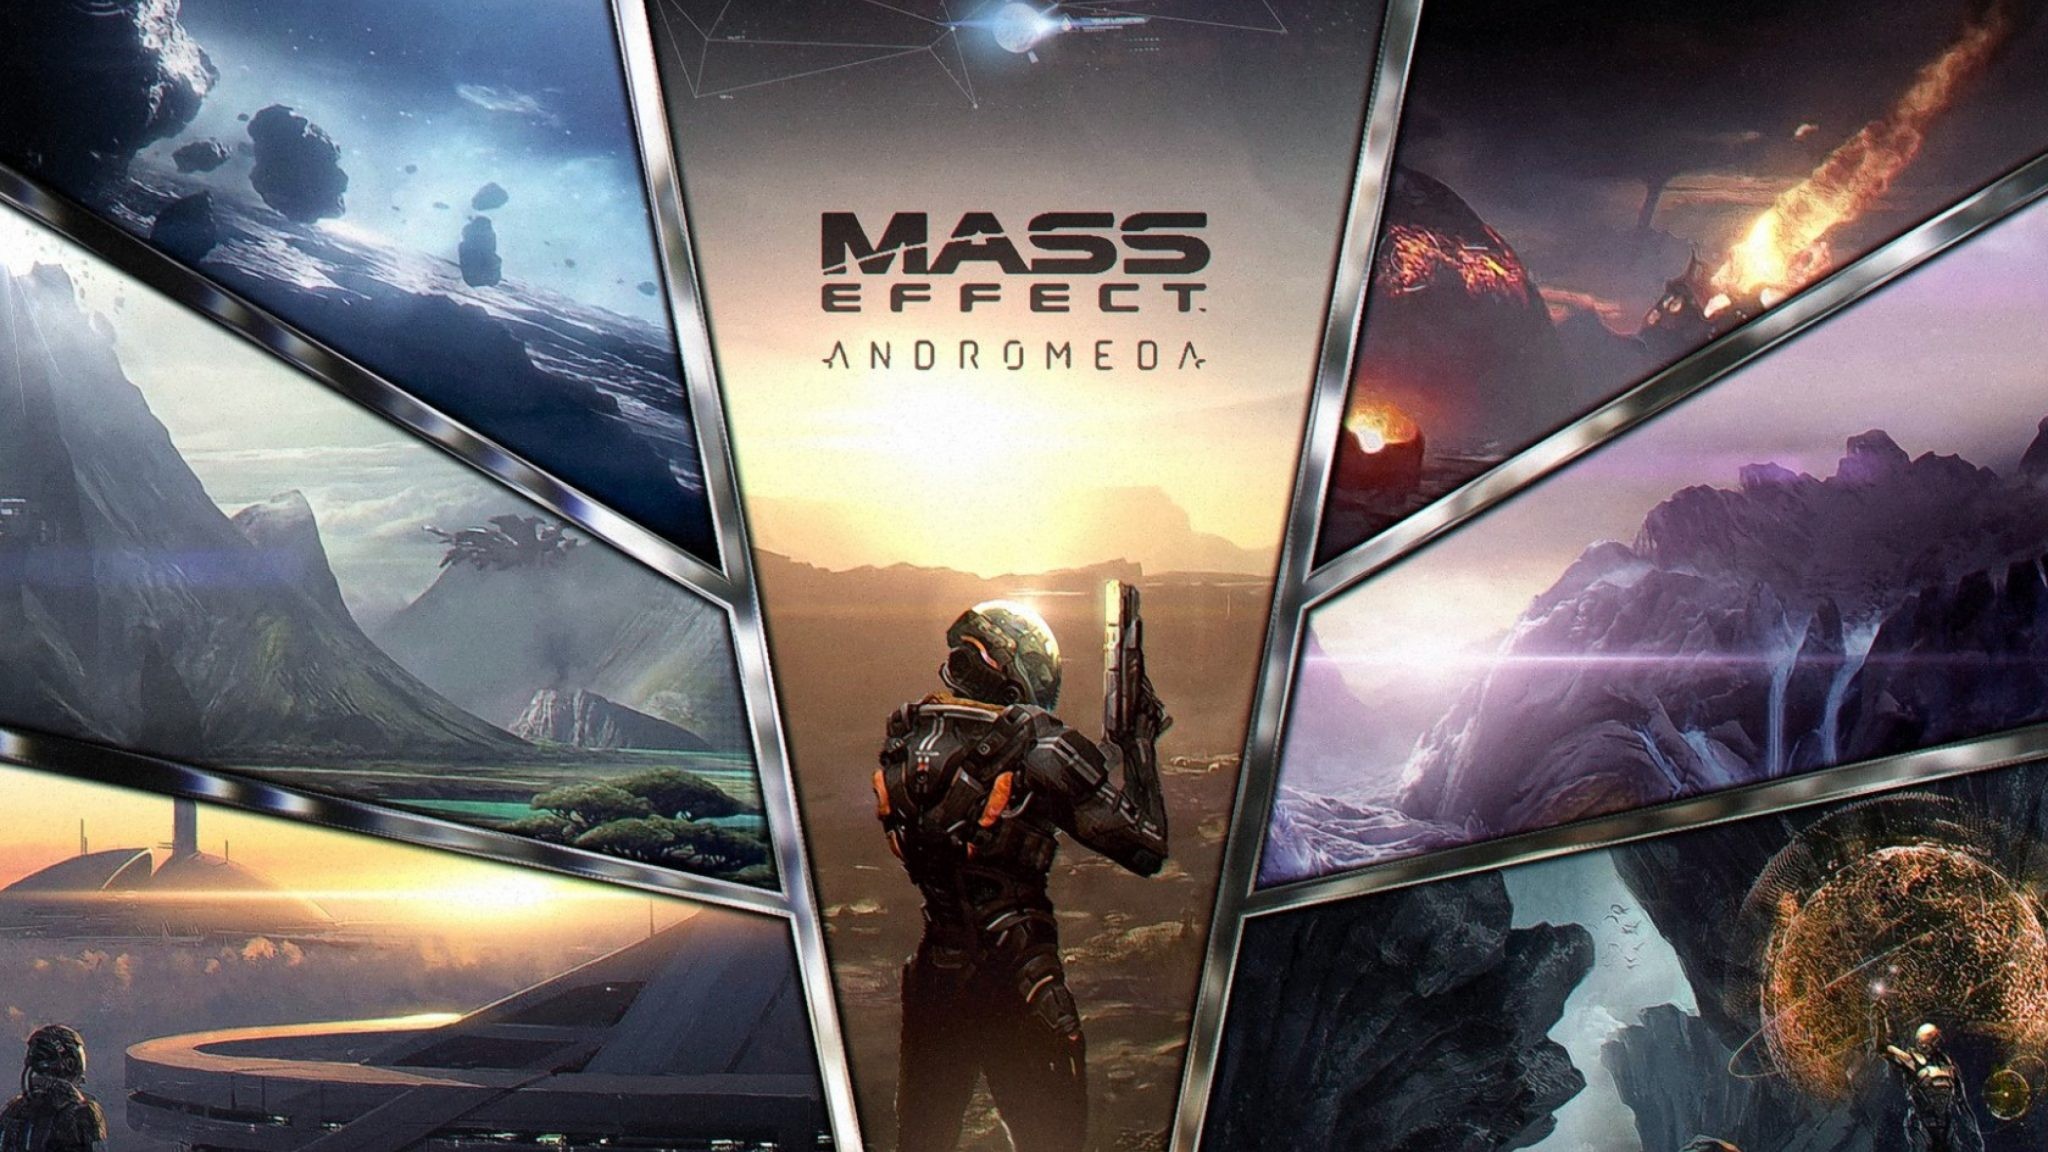 Объявлена дата выхода Mass Effect: Andromeda